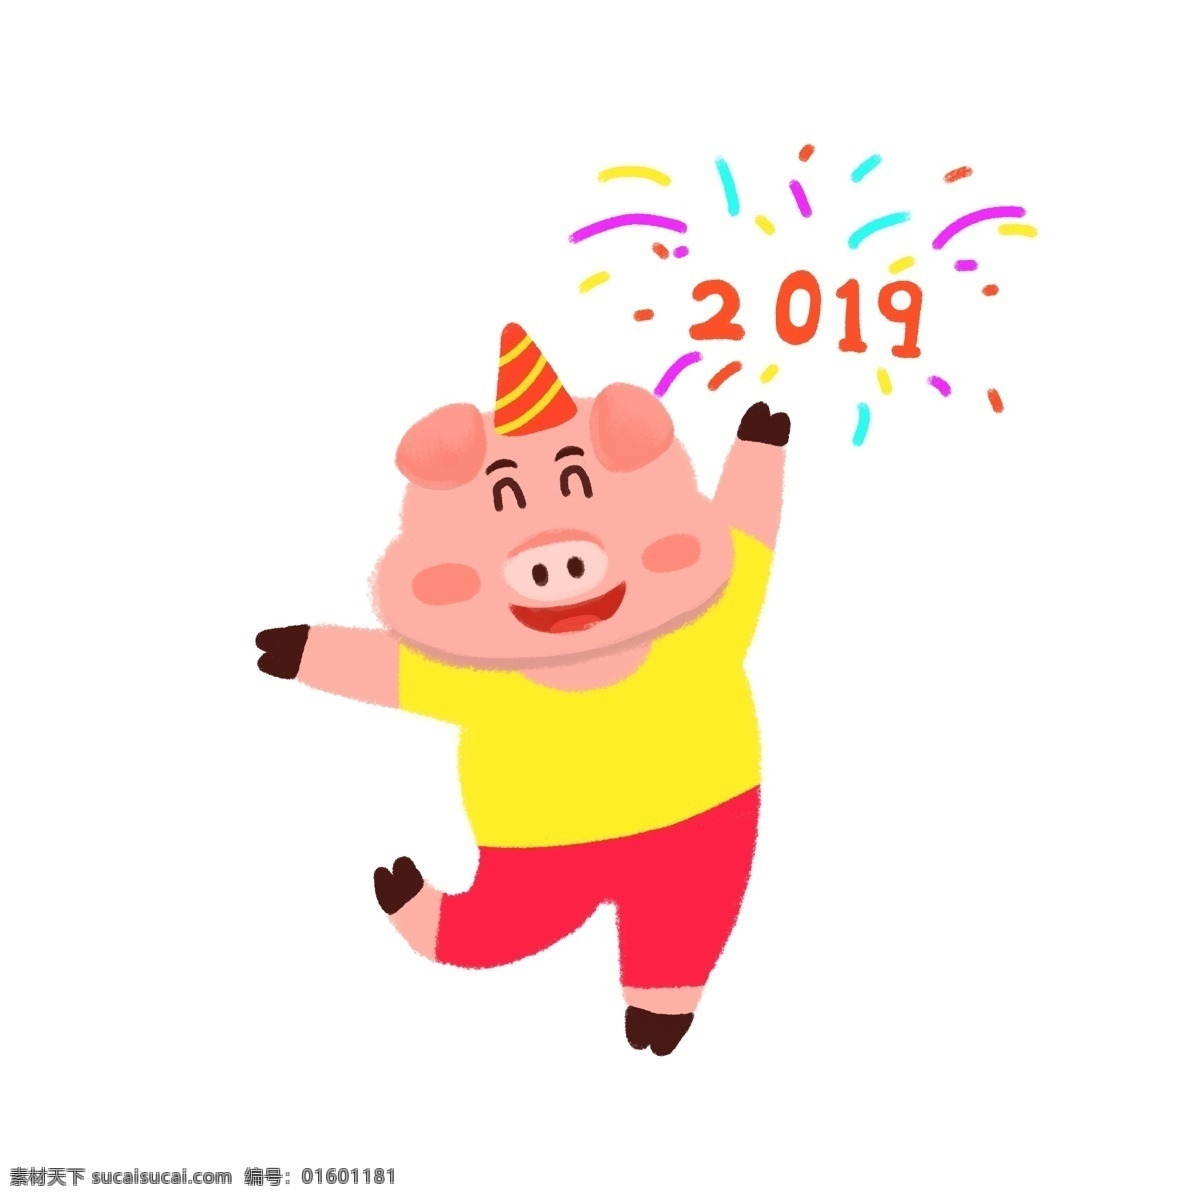 狂欢 小 猪 手绘 卡通 装饰画 喜庆 壁纸 插画 过年 2019年 恭喜发财 卡通风 小猪猪 童话风 金猪猪 拜年 猪年 祝福 金猪